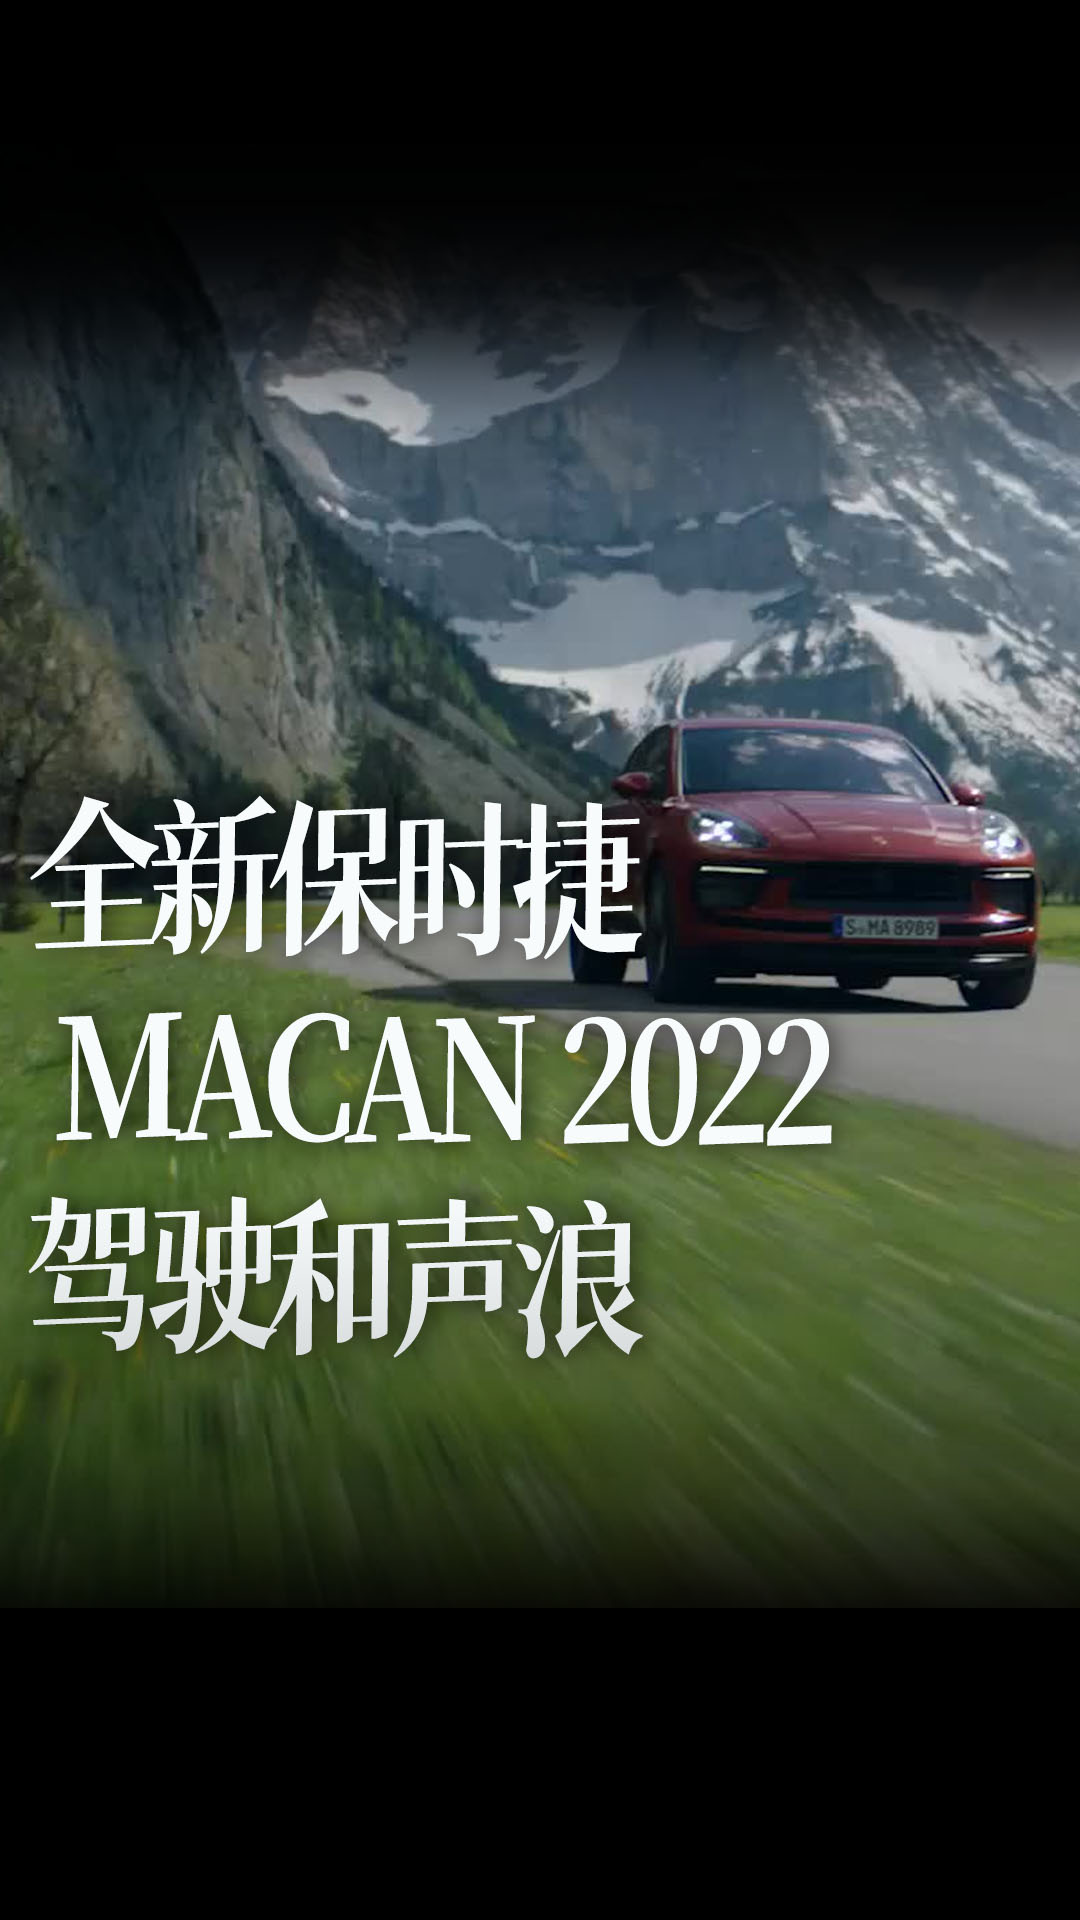 全新保时捷 MACAN 2022 驾驶和声浪